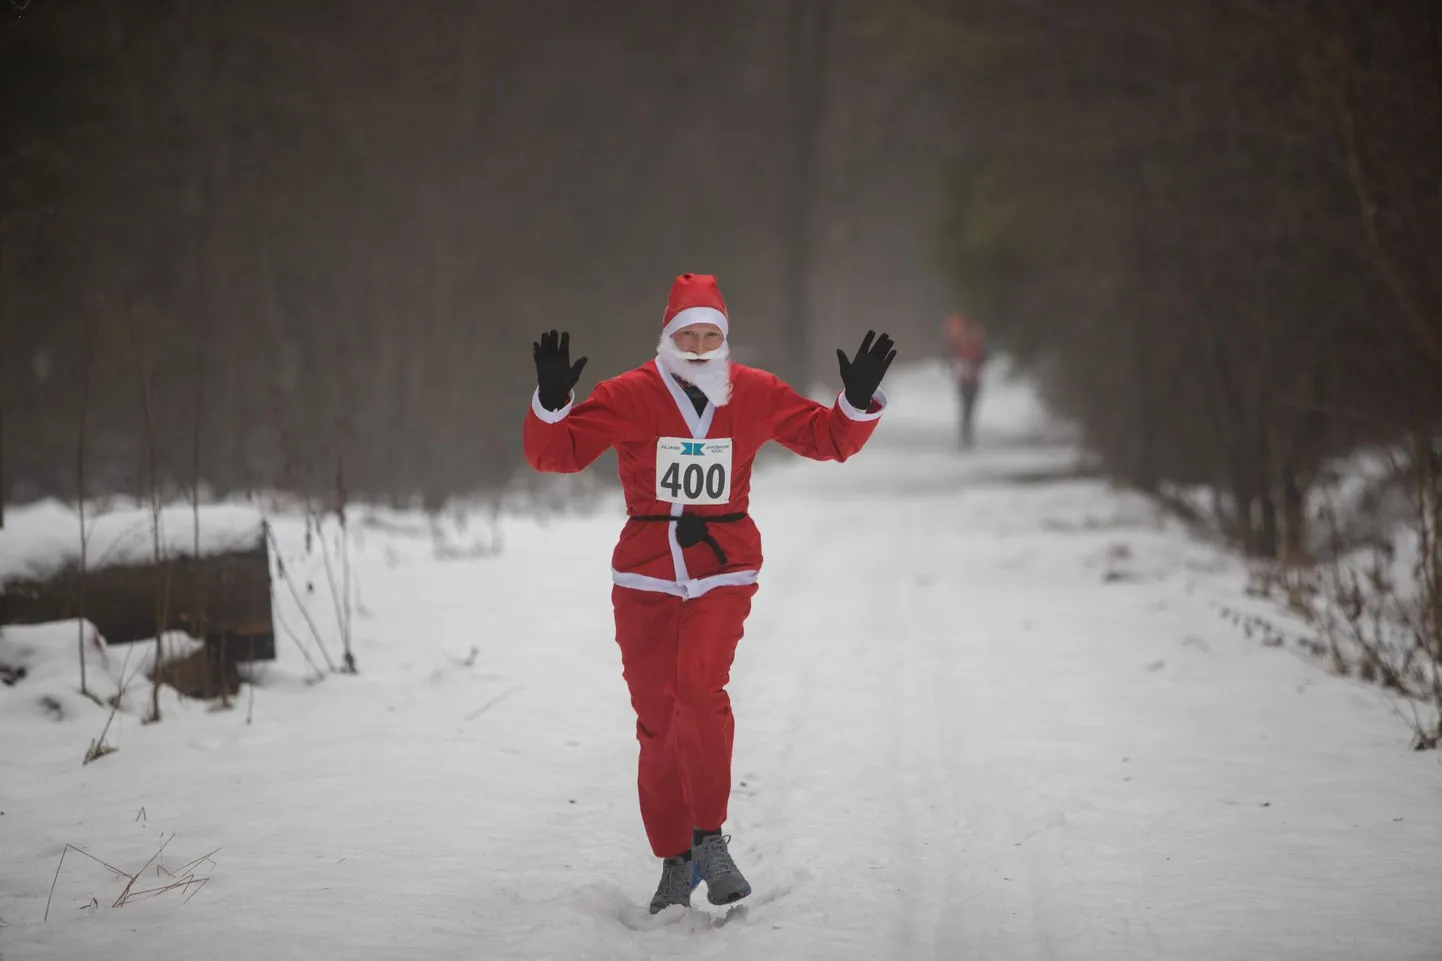 Pühapäeval on traditsiooniline Staieri jõulujooks, millel mõni osaleja on spordidressi asemel kandnud punast kuube.